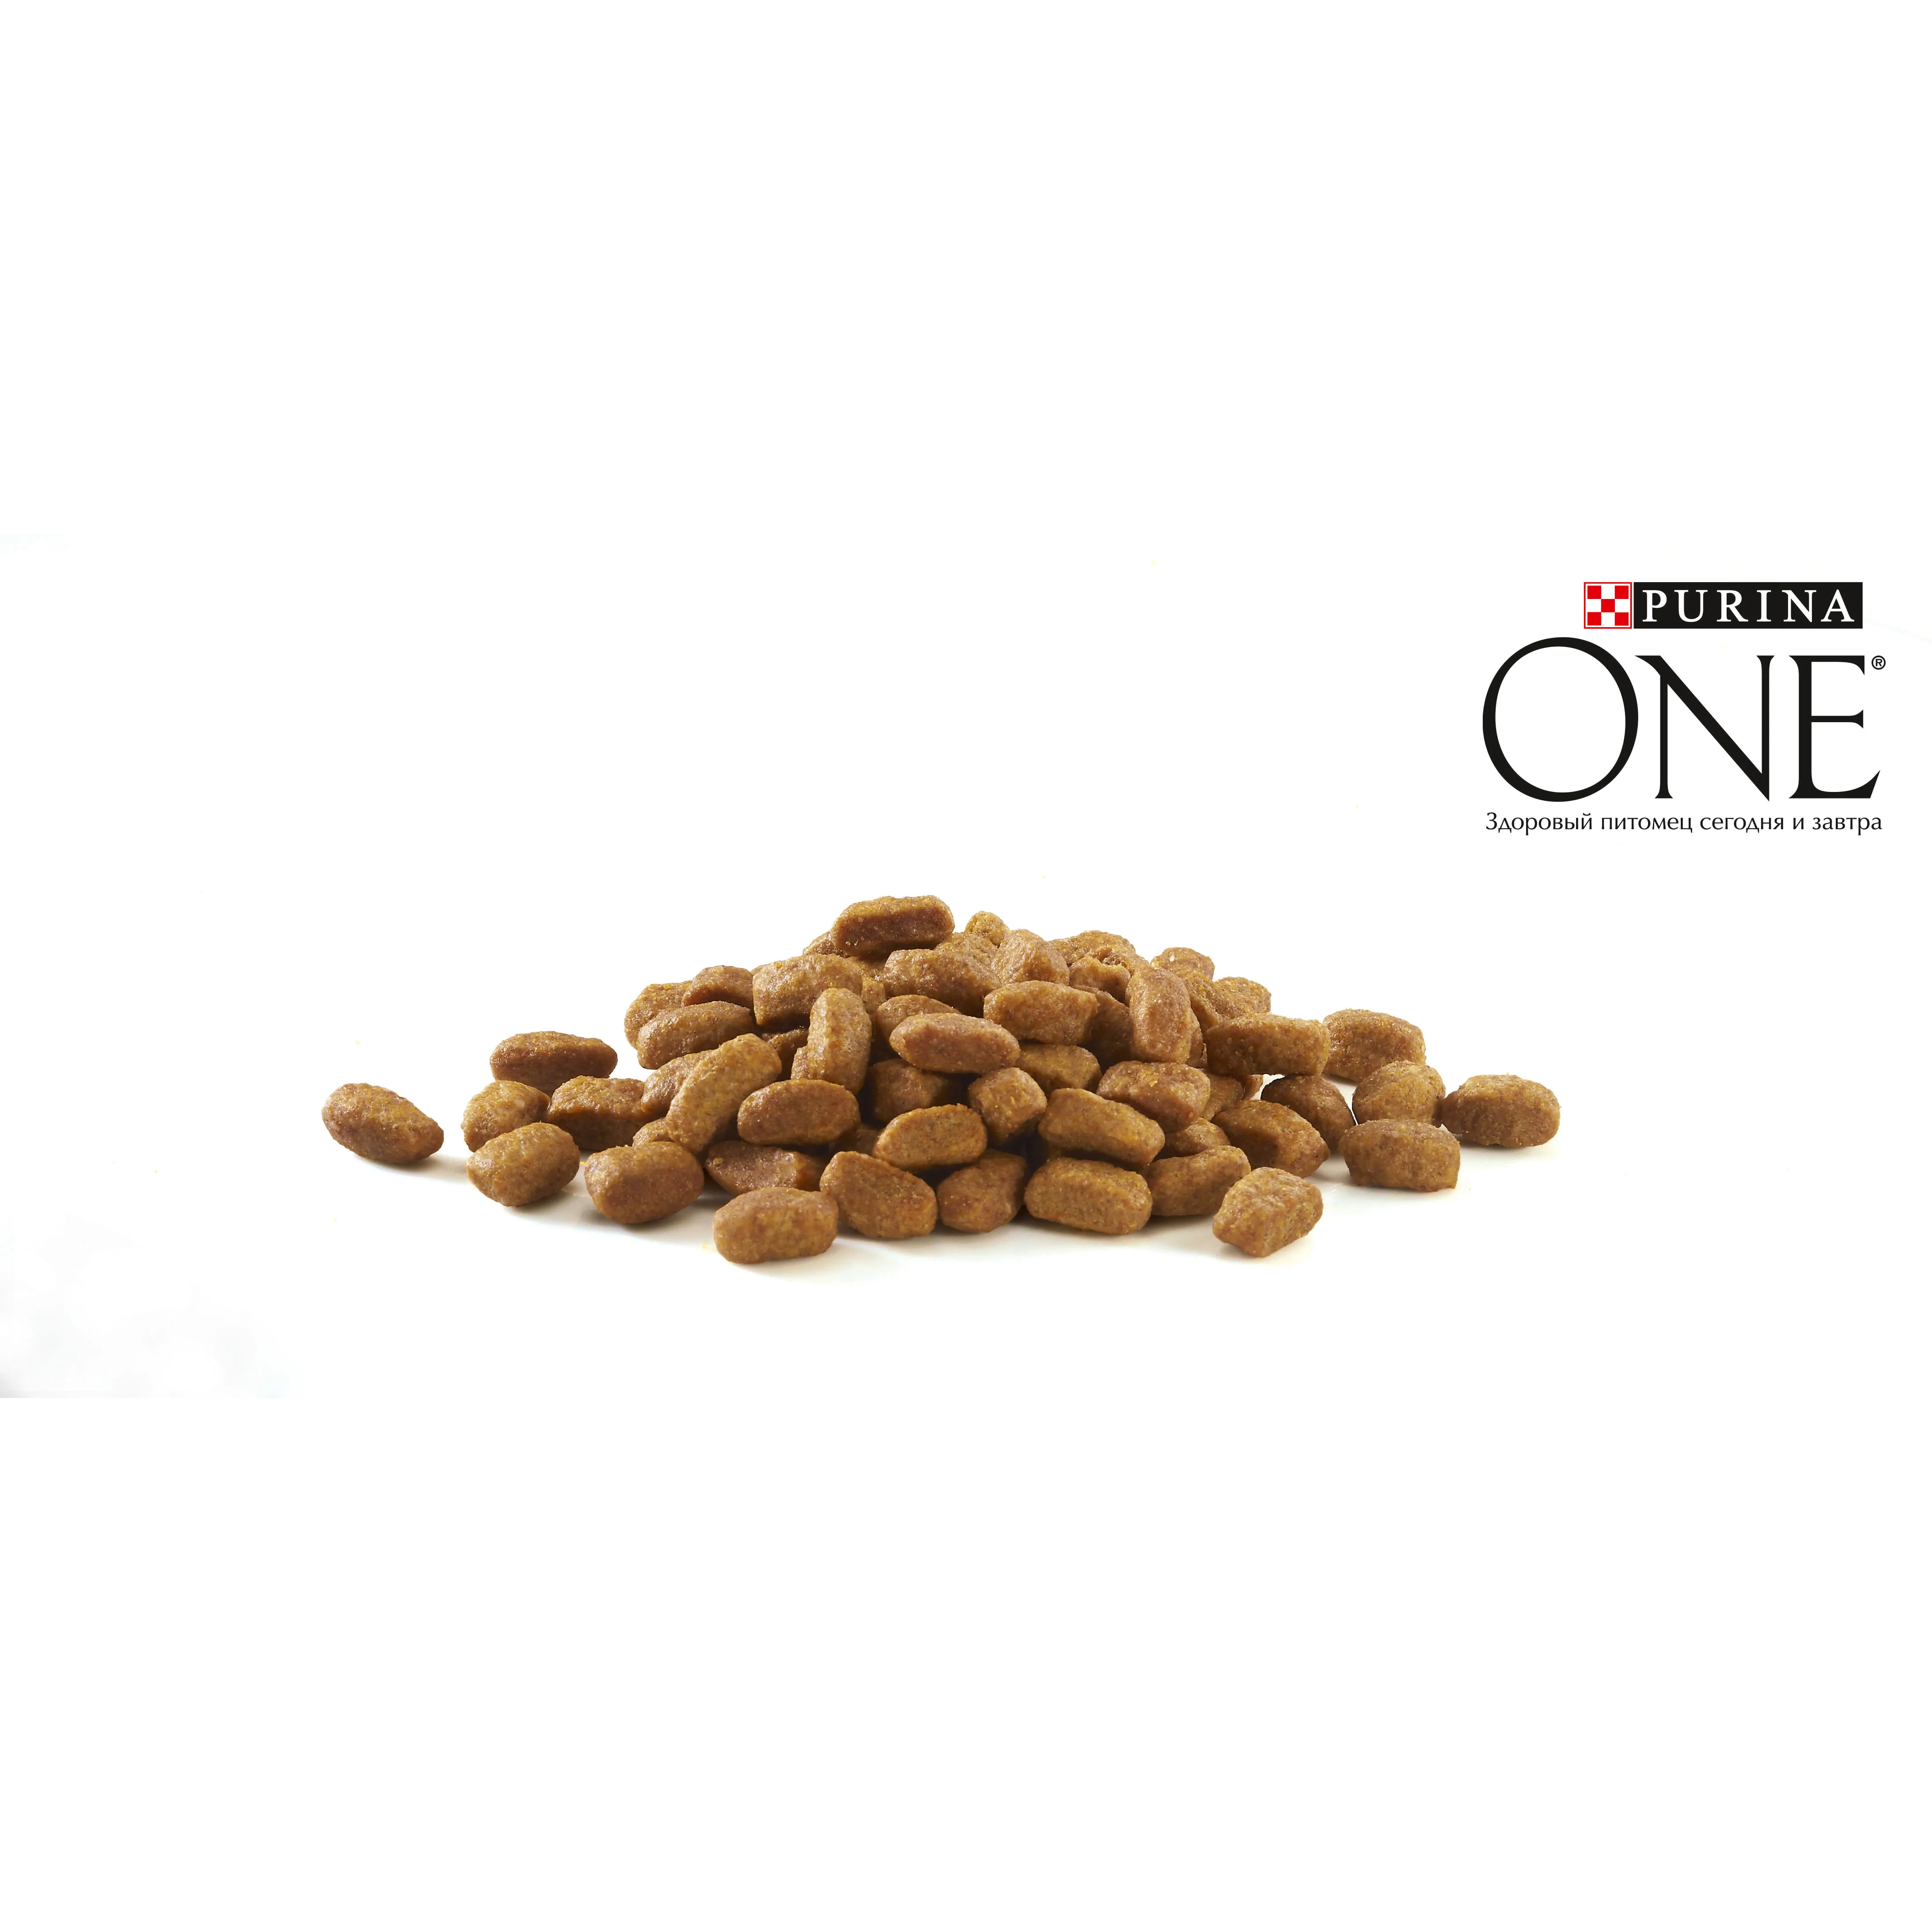 Сухой корм Purina ONE для стерилизованных кошек и котов с говядиной и пшеницей, Пакет, 3 кг